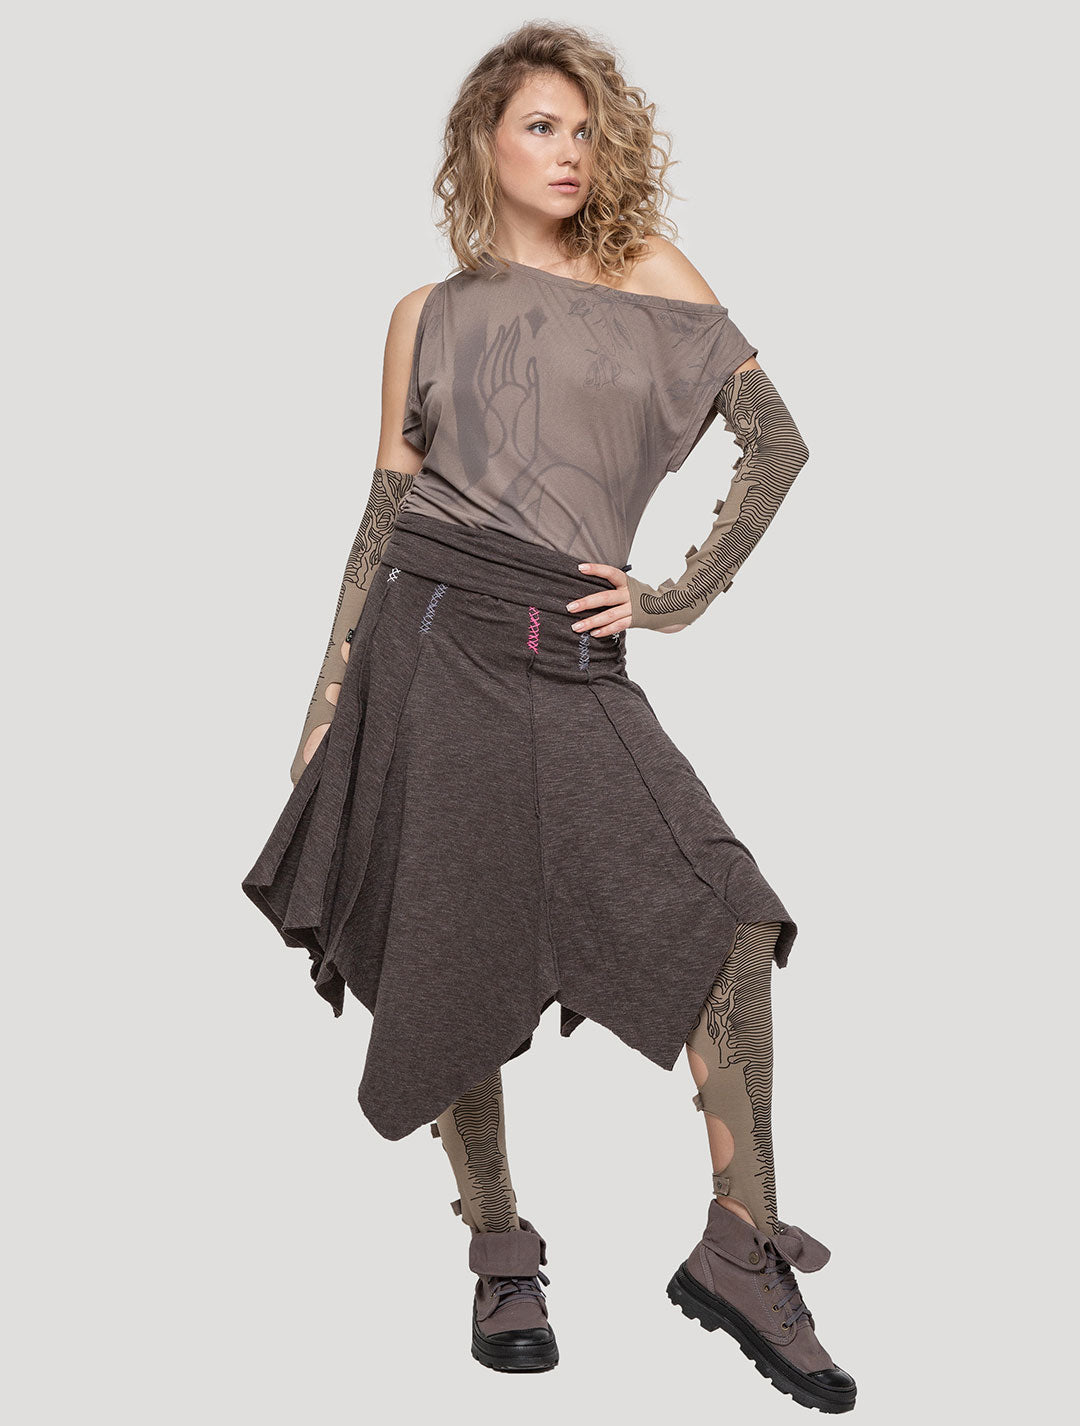 'Heidi' Charcoal Pixie Skirt - Psylo Fashion